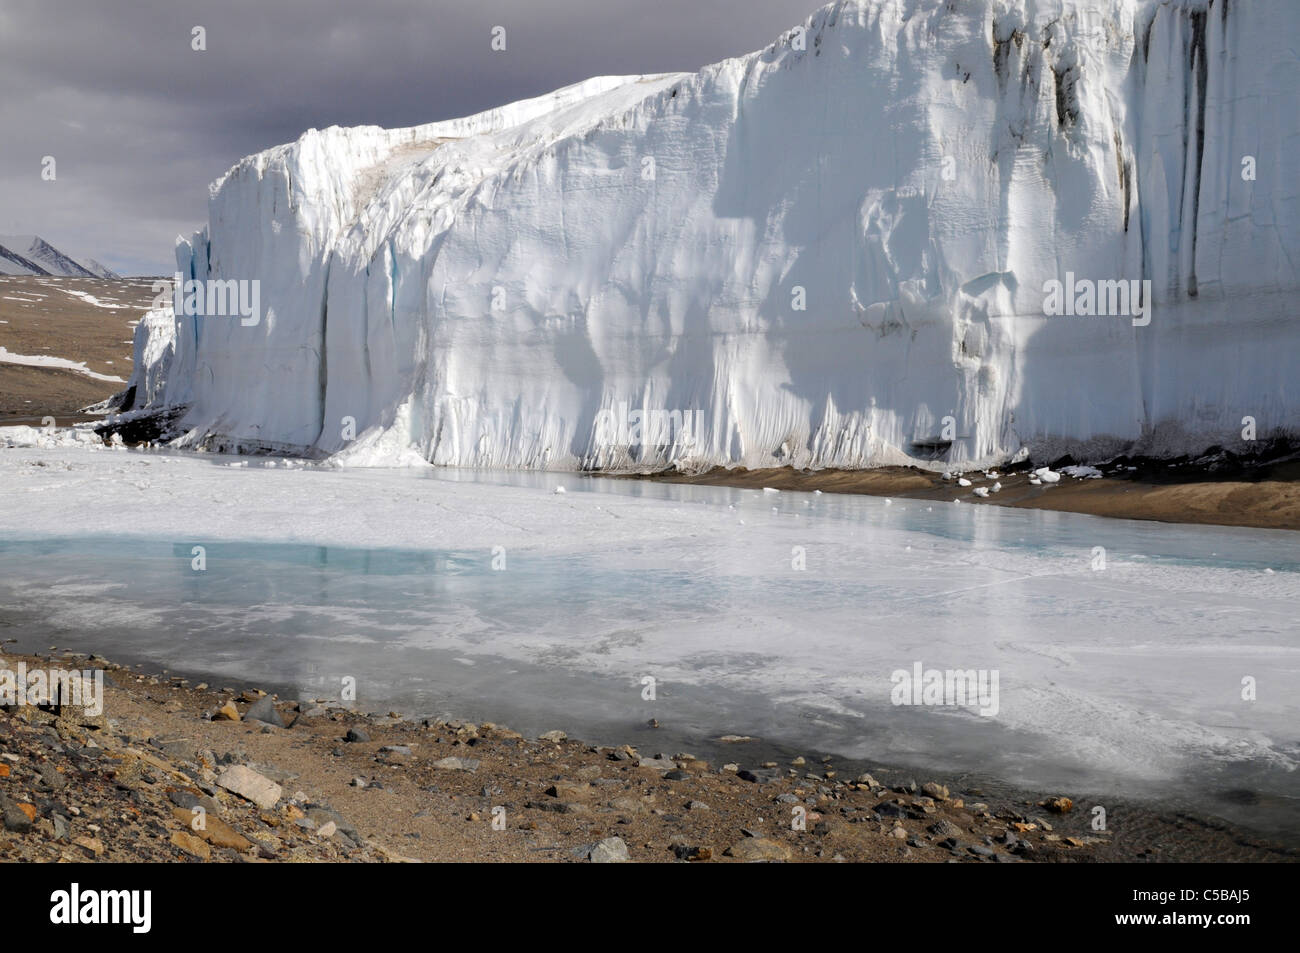 El Glaciar Canadá Valle Taylor, de los valles secos de McMurdo, en la Antártida Foto de stock